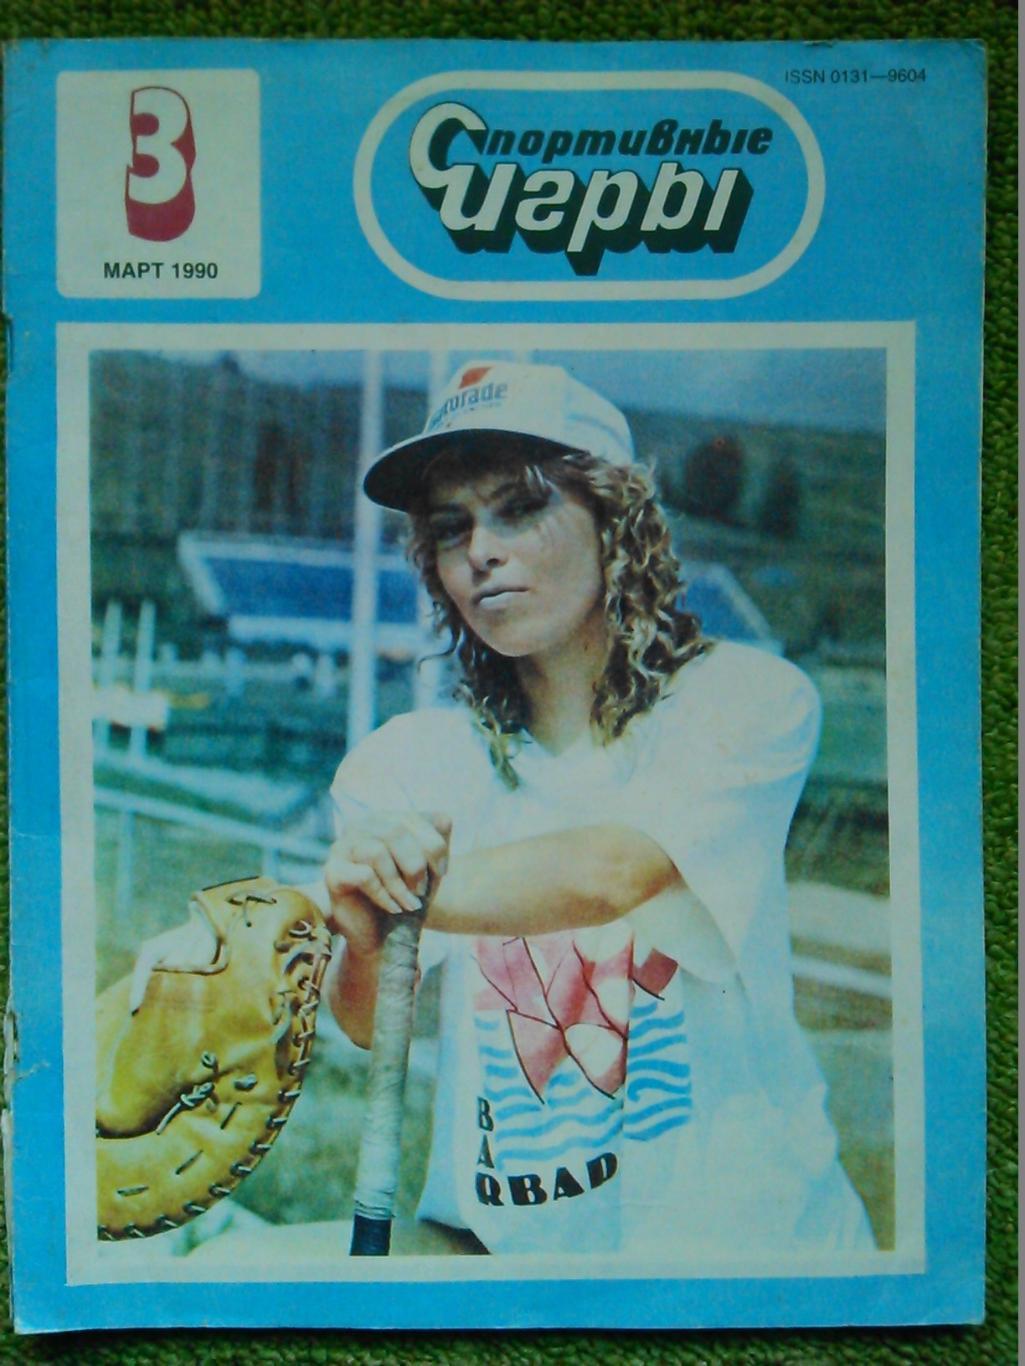 Спортивные игры № 2.1990г.-спецвыпуск о теннисе. постер. Оптом скидки до 50%! 4